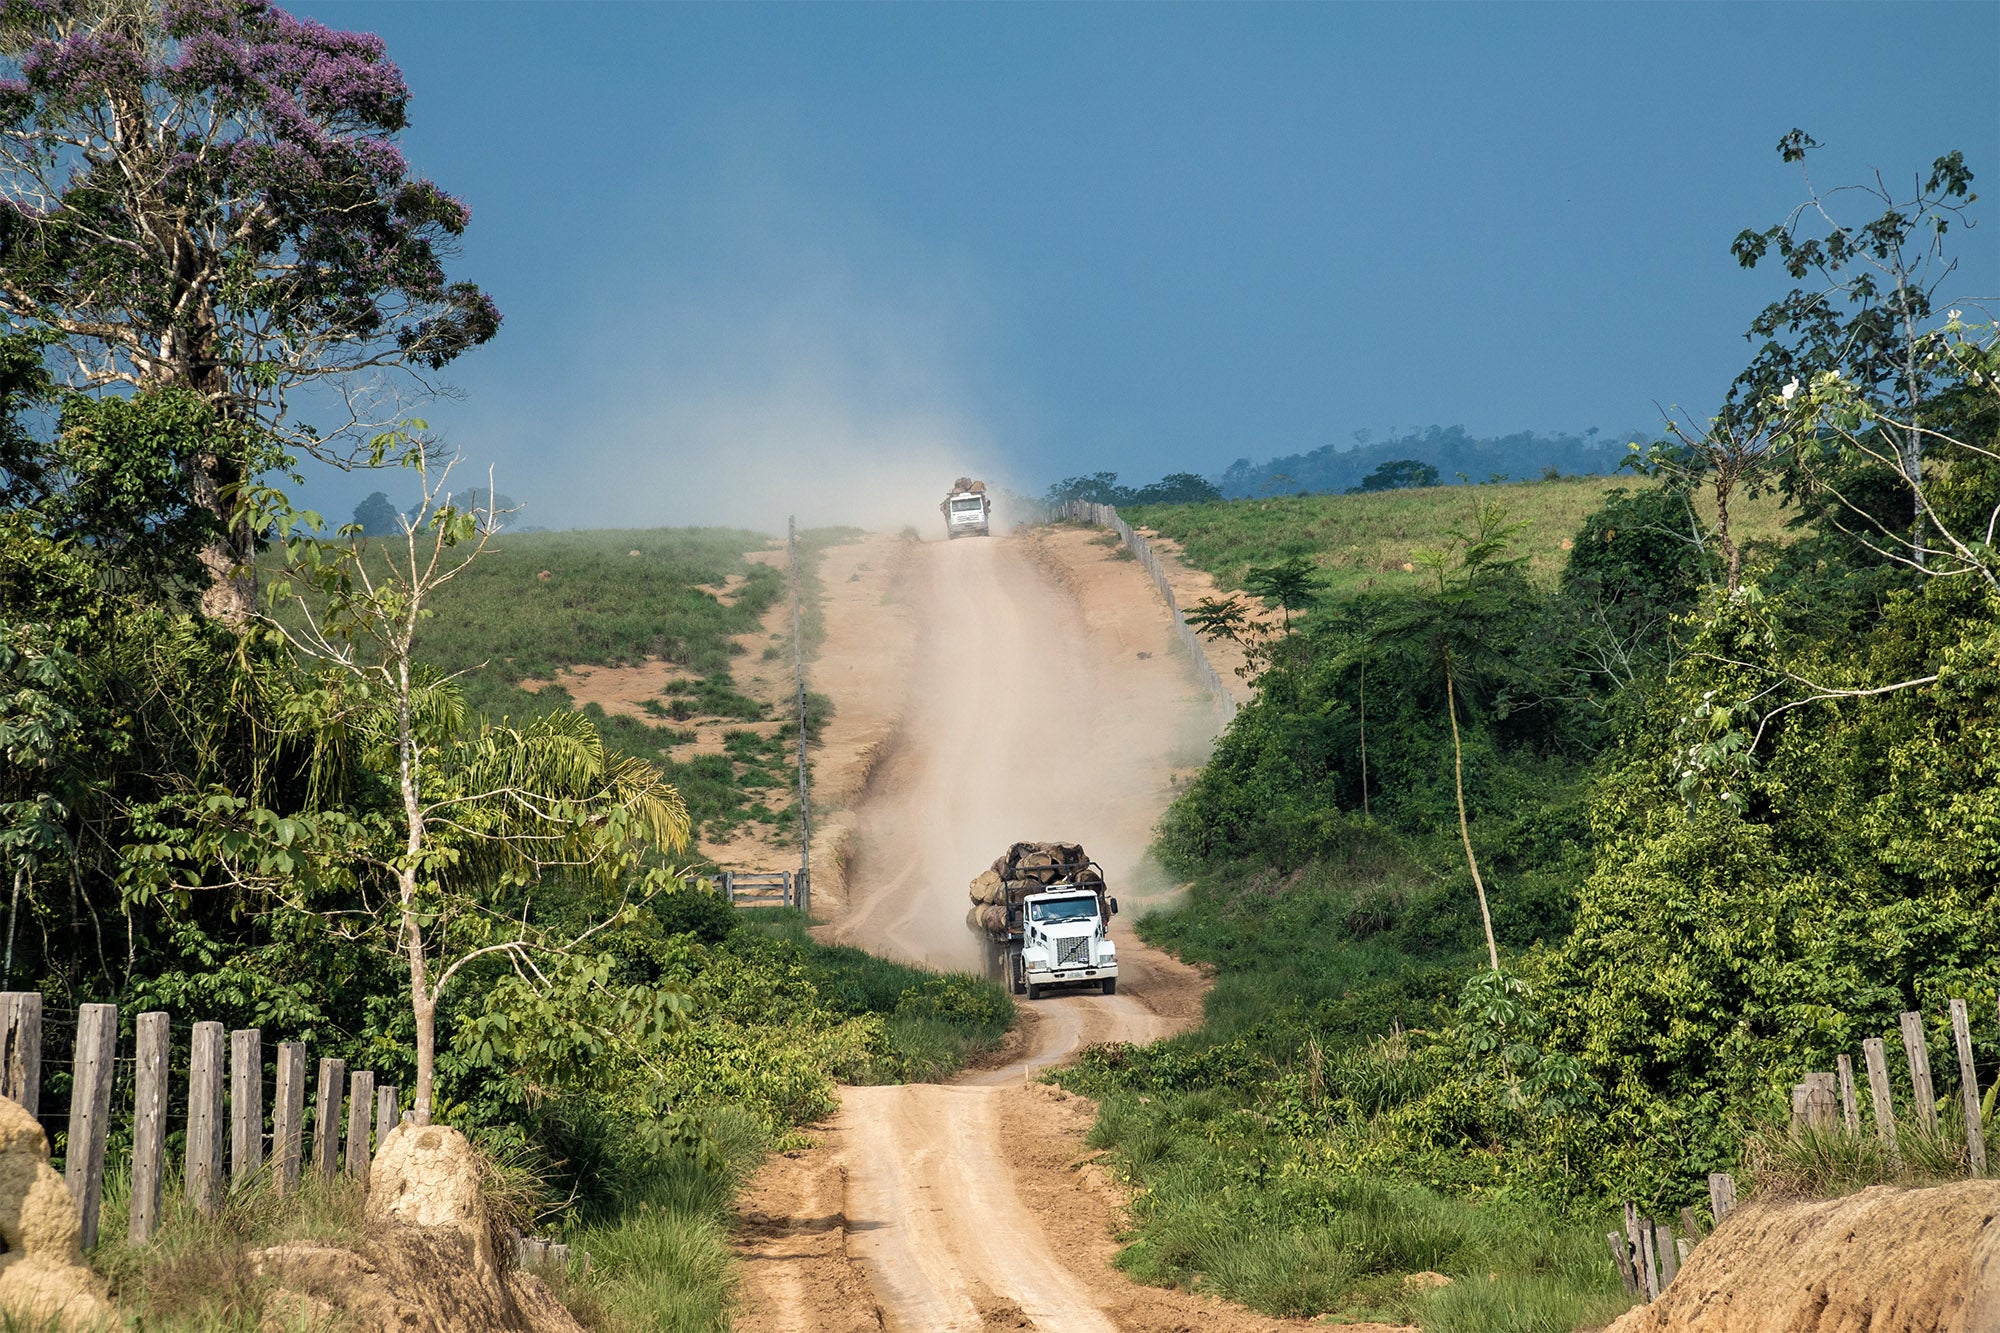 Des camions transportant des grumes de bois récoltées illégalement dans la forêt amazonienne, photographiés dans la zone de Terra Nossa en Amazonie, au Brésil, le 30 septembre 2019.